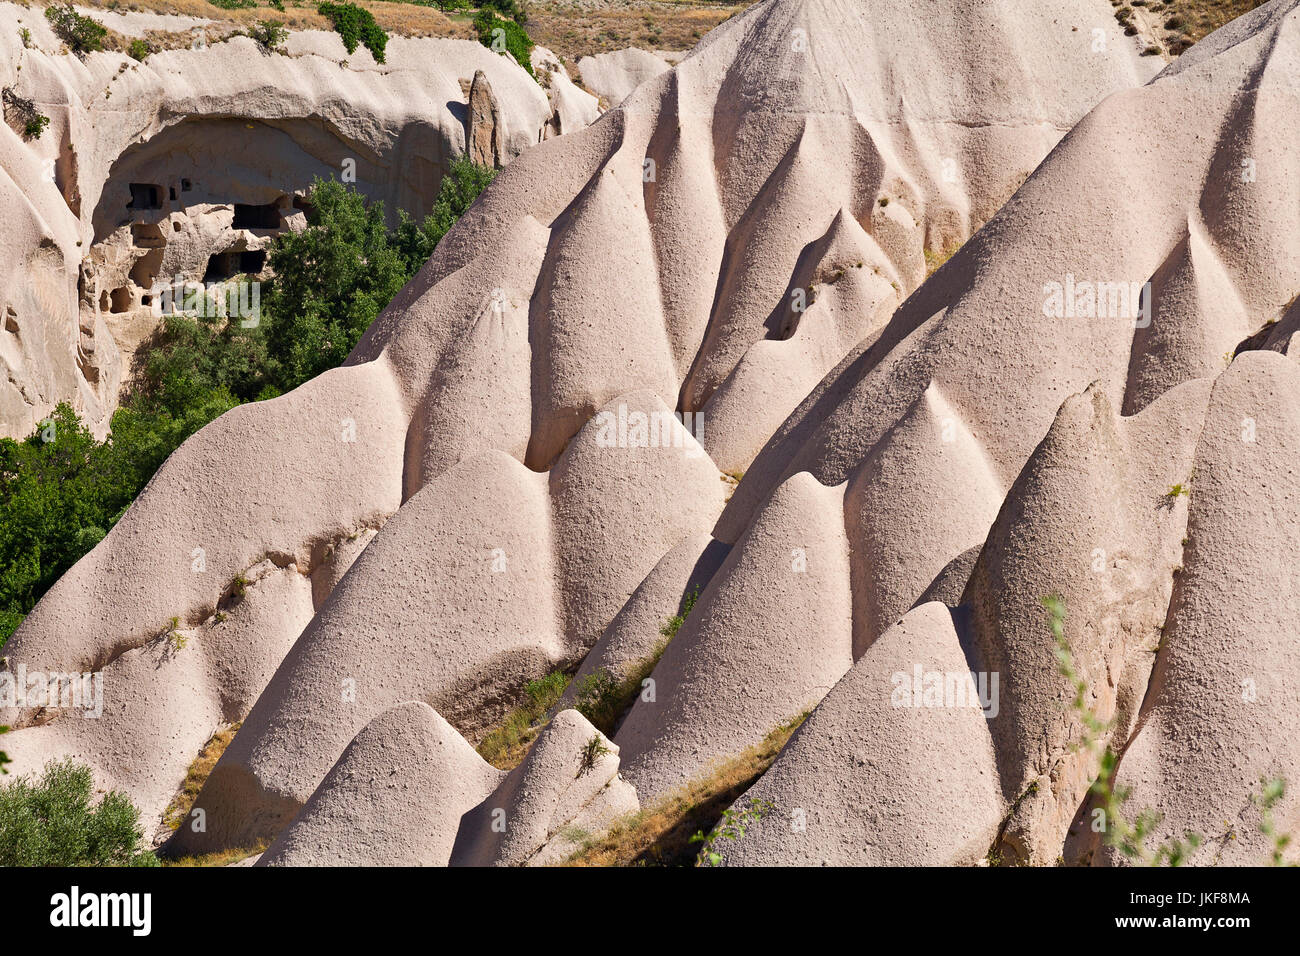 Formations de roche volcanique connu sous le nom de cheminées de fées et terrain extrême de la Cappadoce, Turquie. Banque D'Images